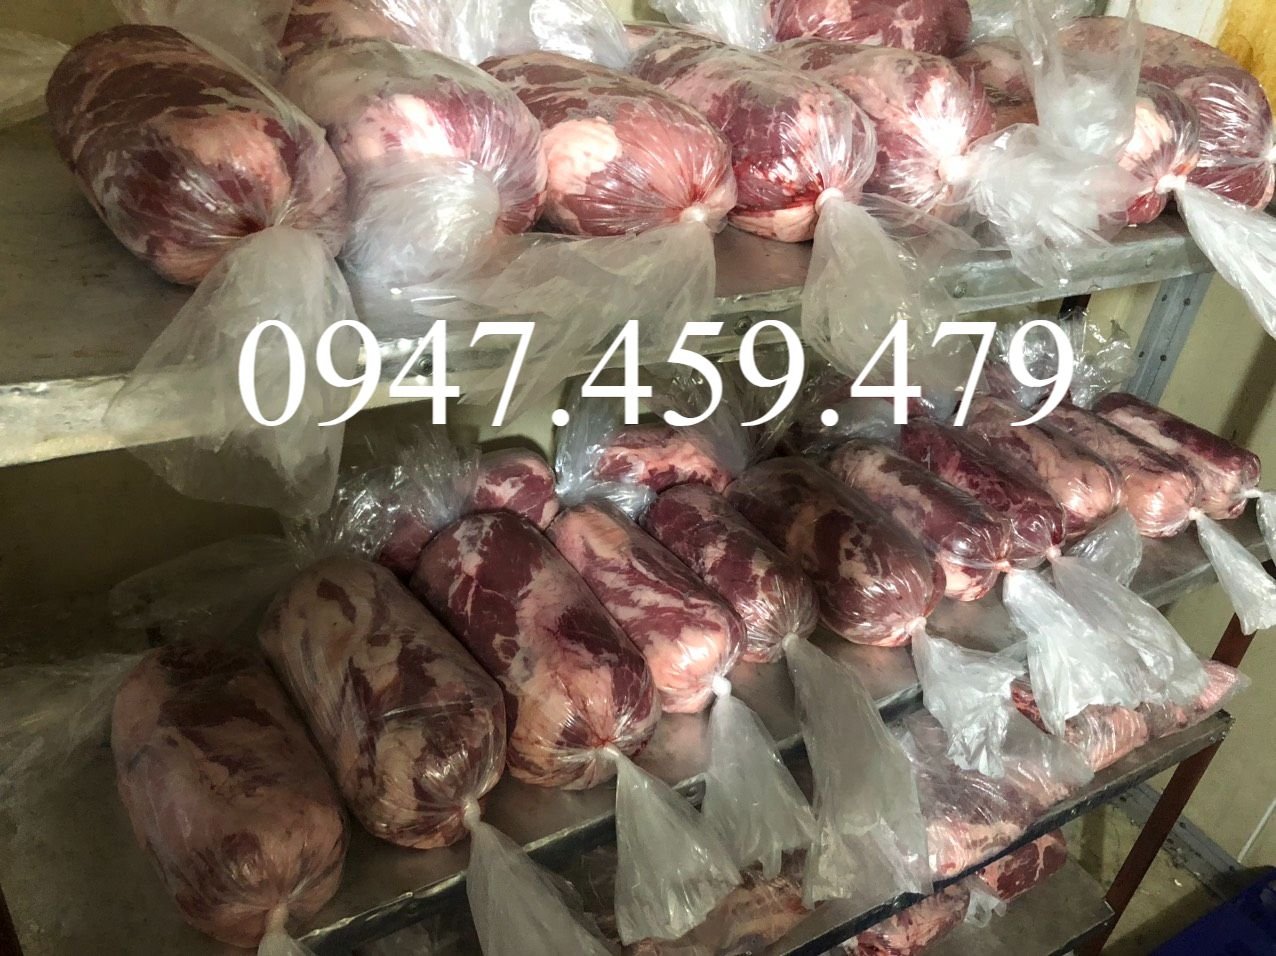 0947459479 cung cấp lắp đặt kho lạnh tại châu đốc, kho trữ thịt bò